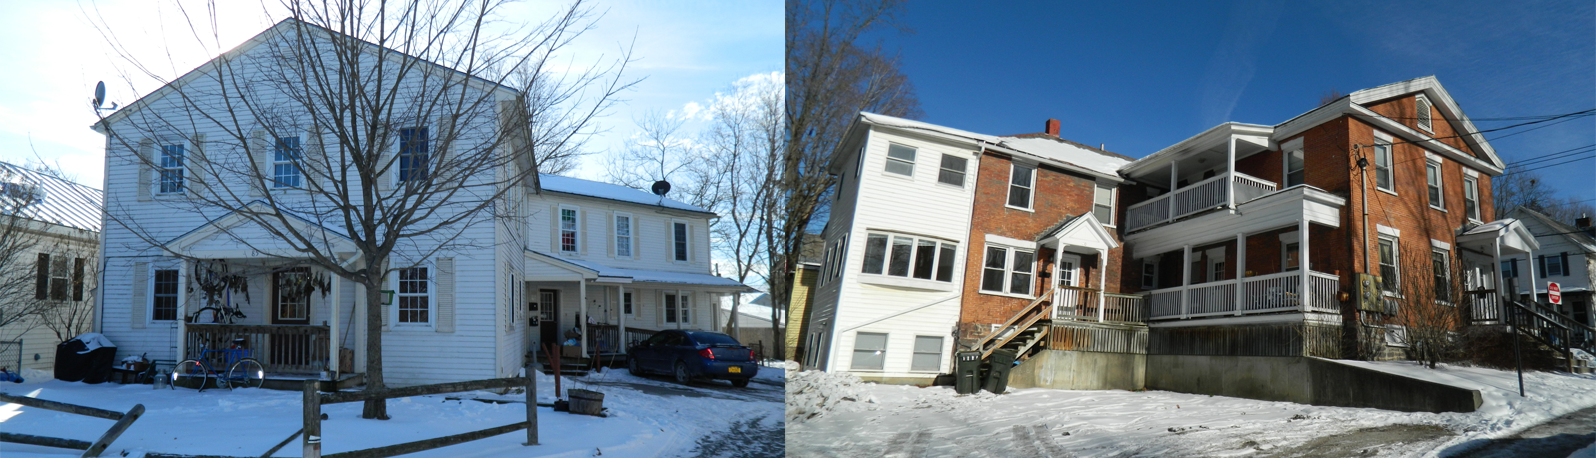 Vermont-Multi-Family-Housing-Market